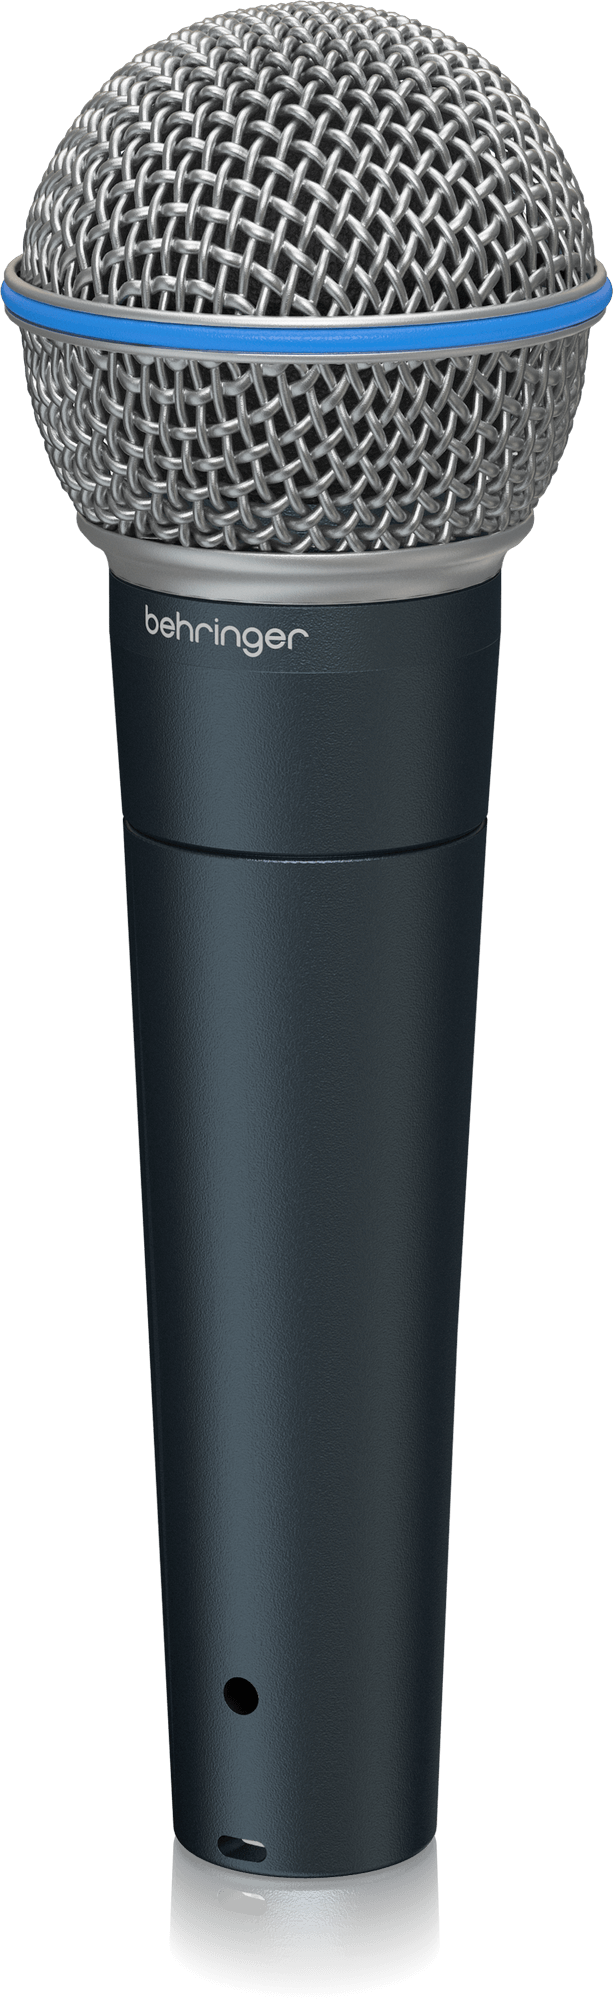 BEHRINGER BA 85A - суперкардиоидный динамический микрофон, 50 - 16000 Гц, 300 Ом купить в prostore.me